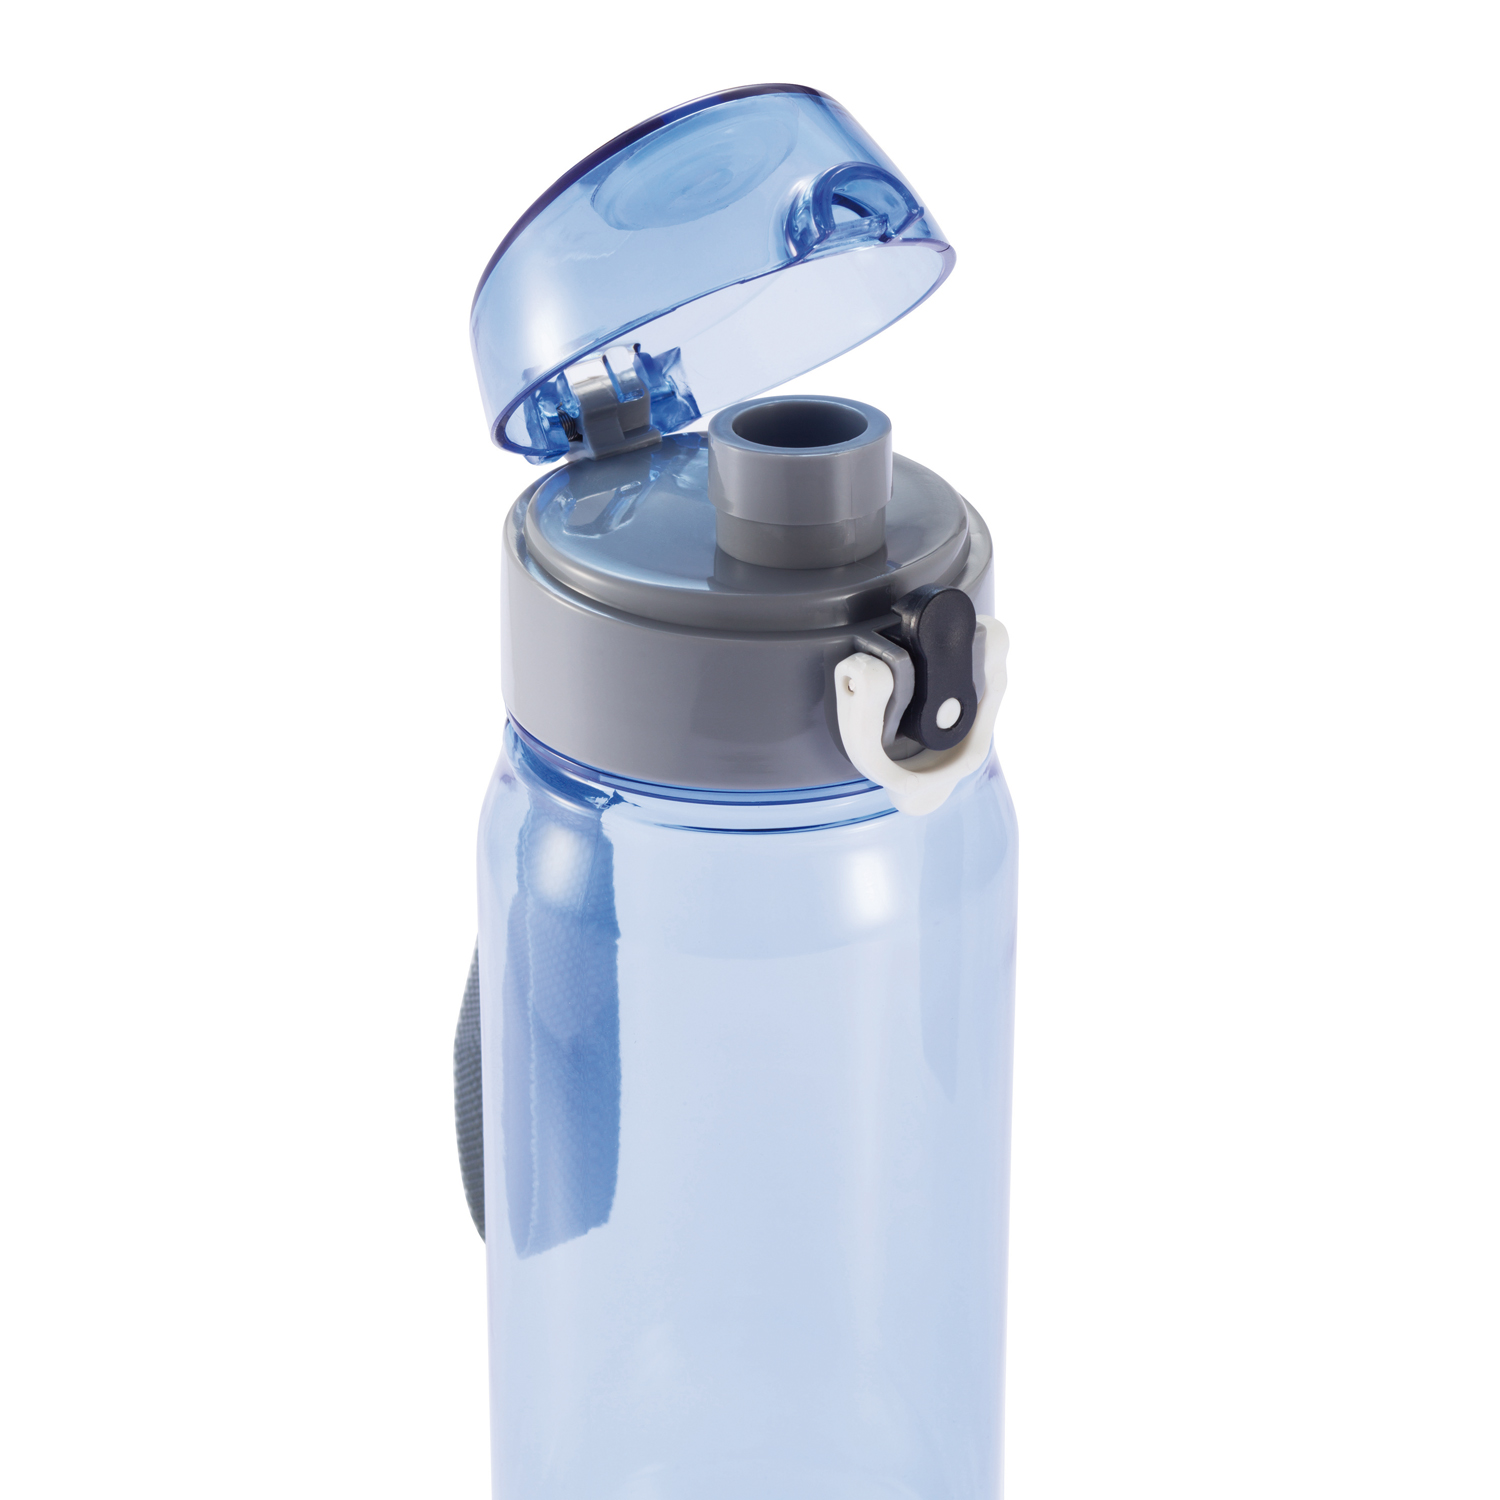 Тритан бутылка для воды. Бутылка Tritan 600 ml. Спортивная бутылка для воды, Forza, 600 ml, синяя. Бутылка спортивная для воды Tritan. Mi бутылка Tritan 600мл, с удобным перемешиванием.